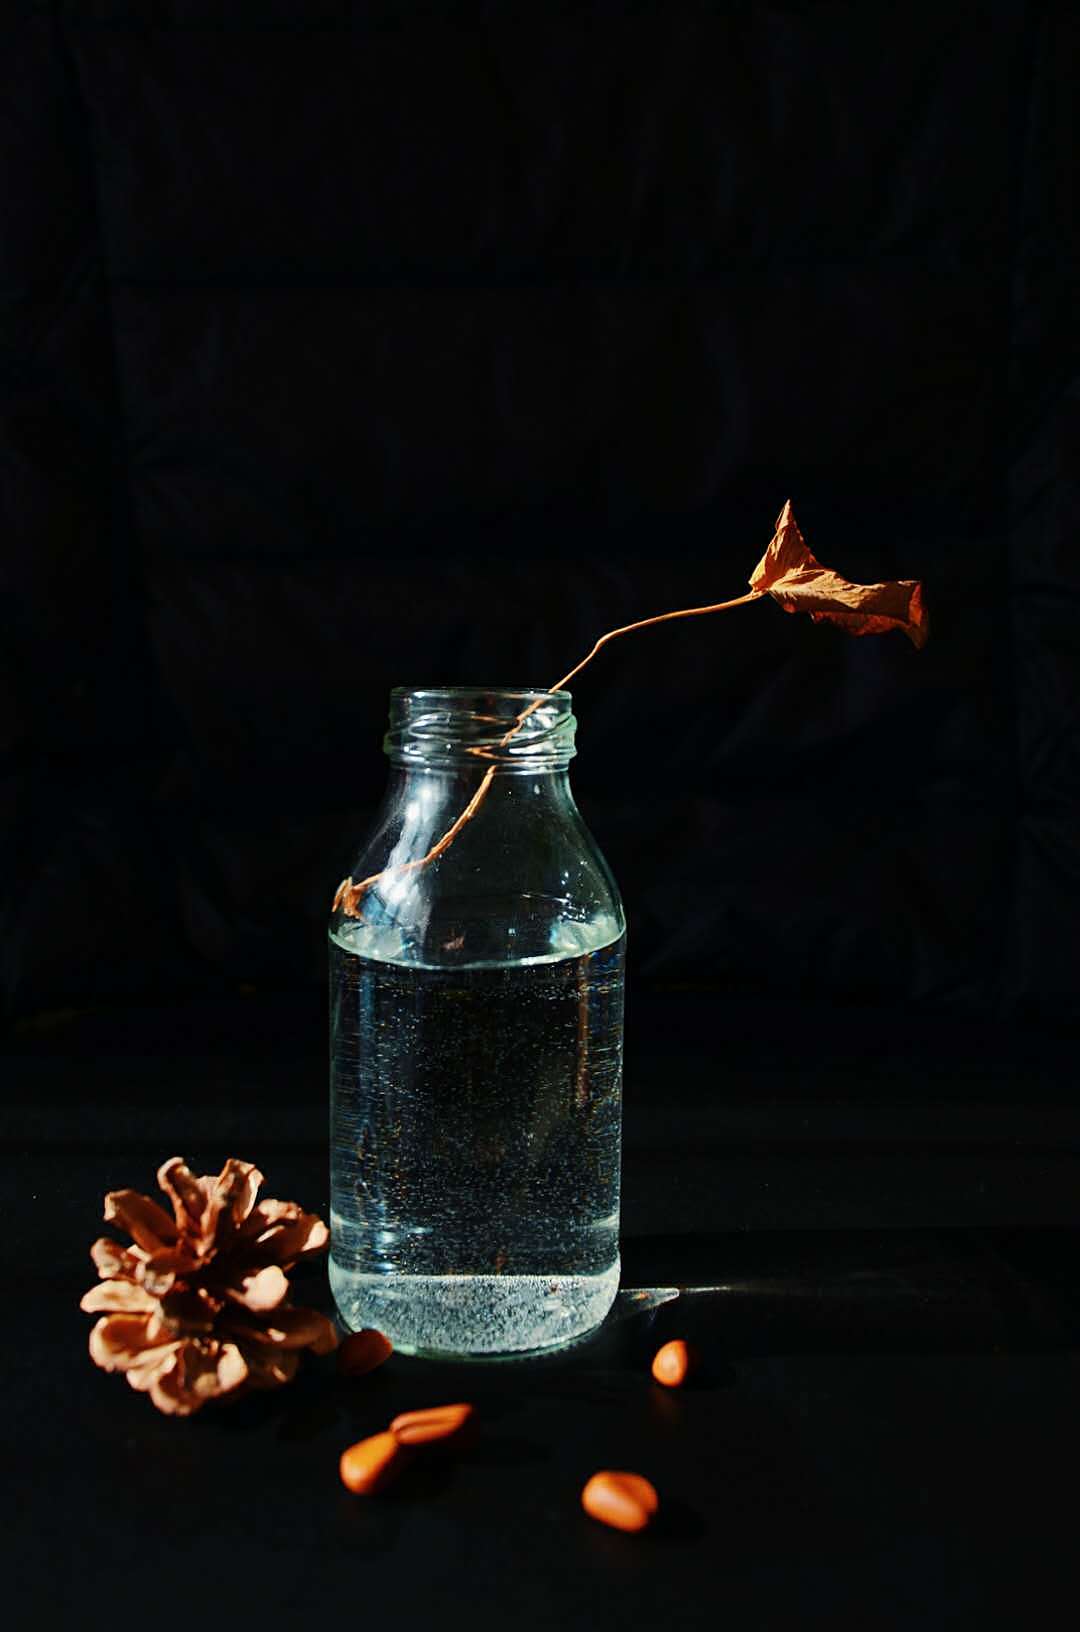 工艺玻璃瓶图片|工艺玻璃瓶样板图|工艺玻璃瓶效果图片_广州市荔湾区乾坤行工艺品经营部